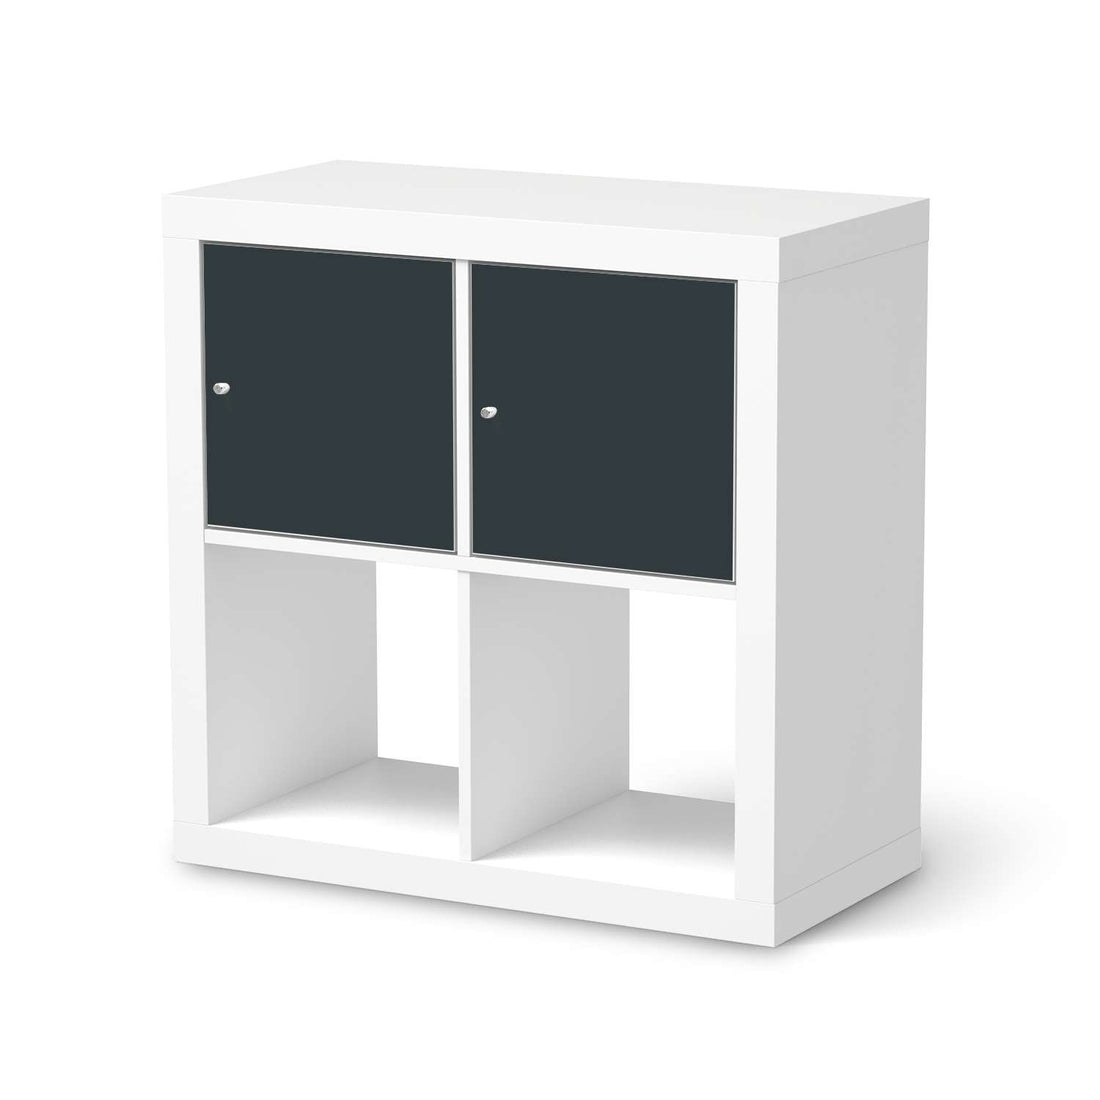 Möbelfolie Blaugrau Dark - IKEA Kallax Regal 2 Türen Quer  - weiss